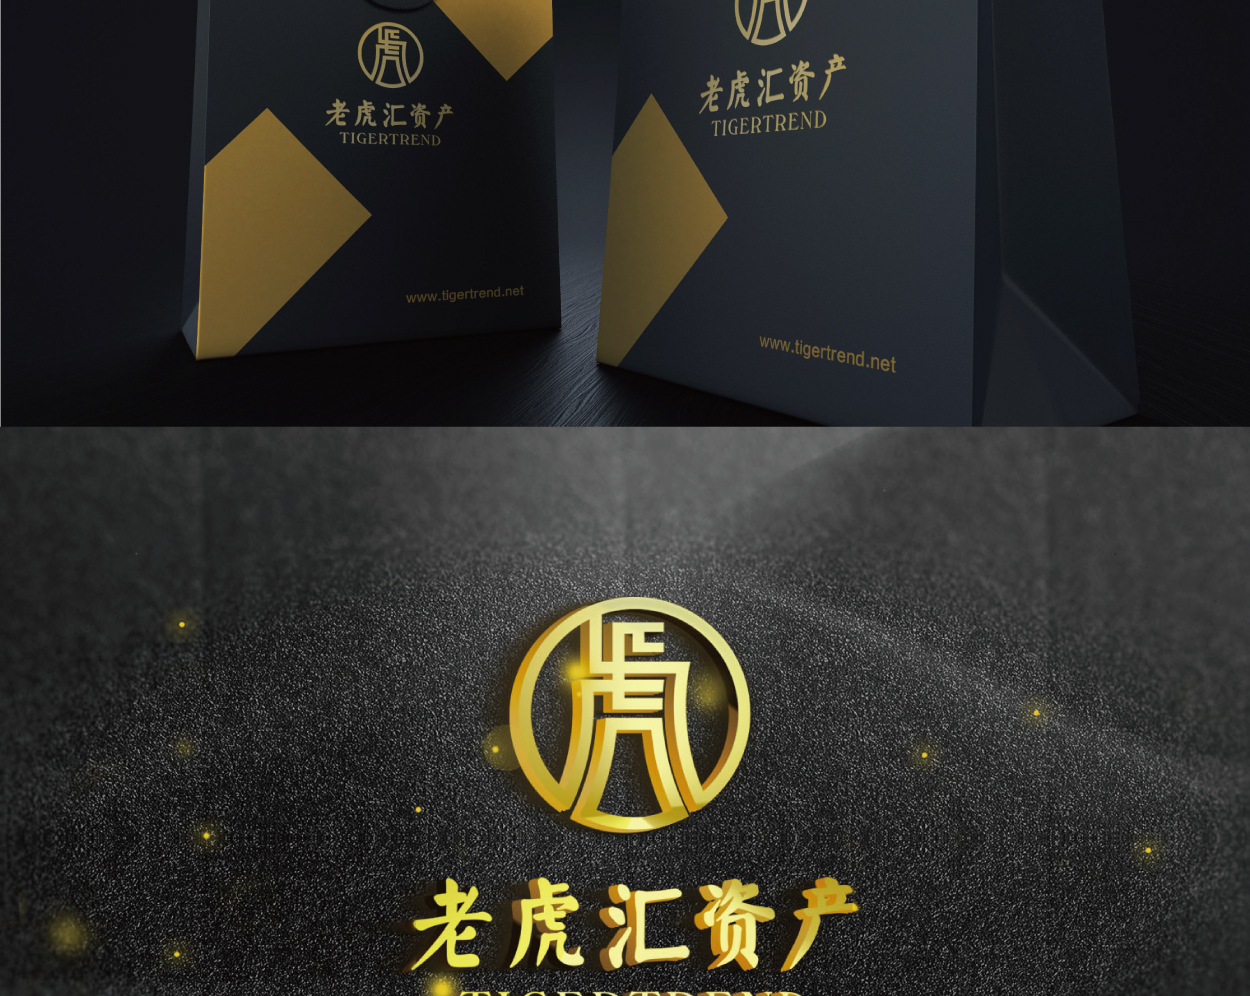 深圳公司logo設計(老虎匯)